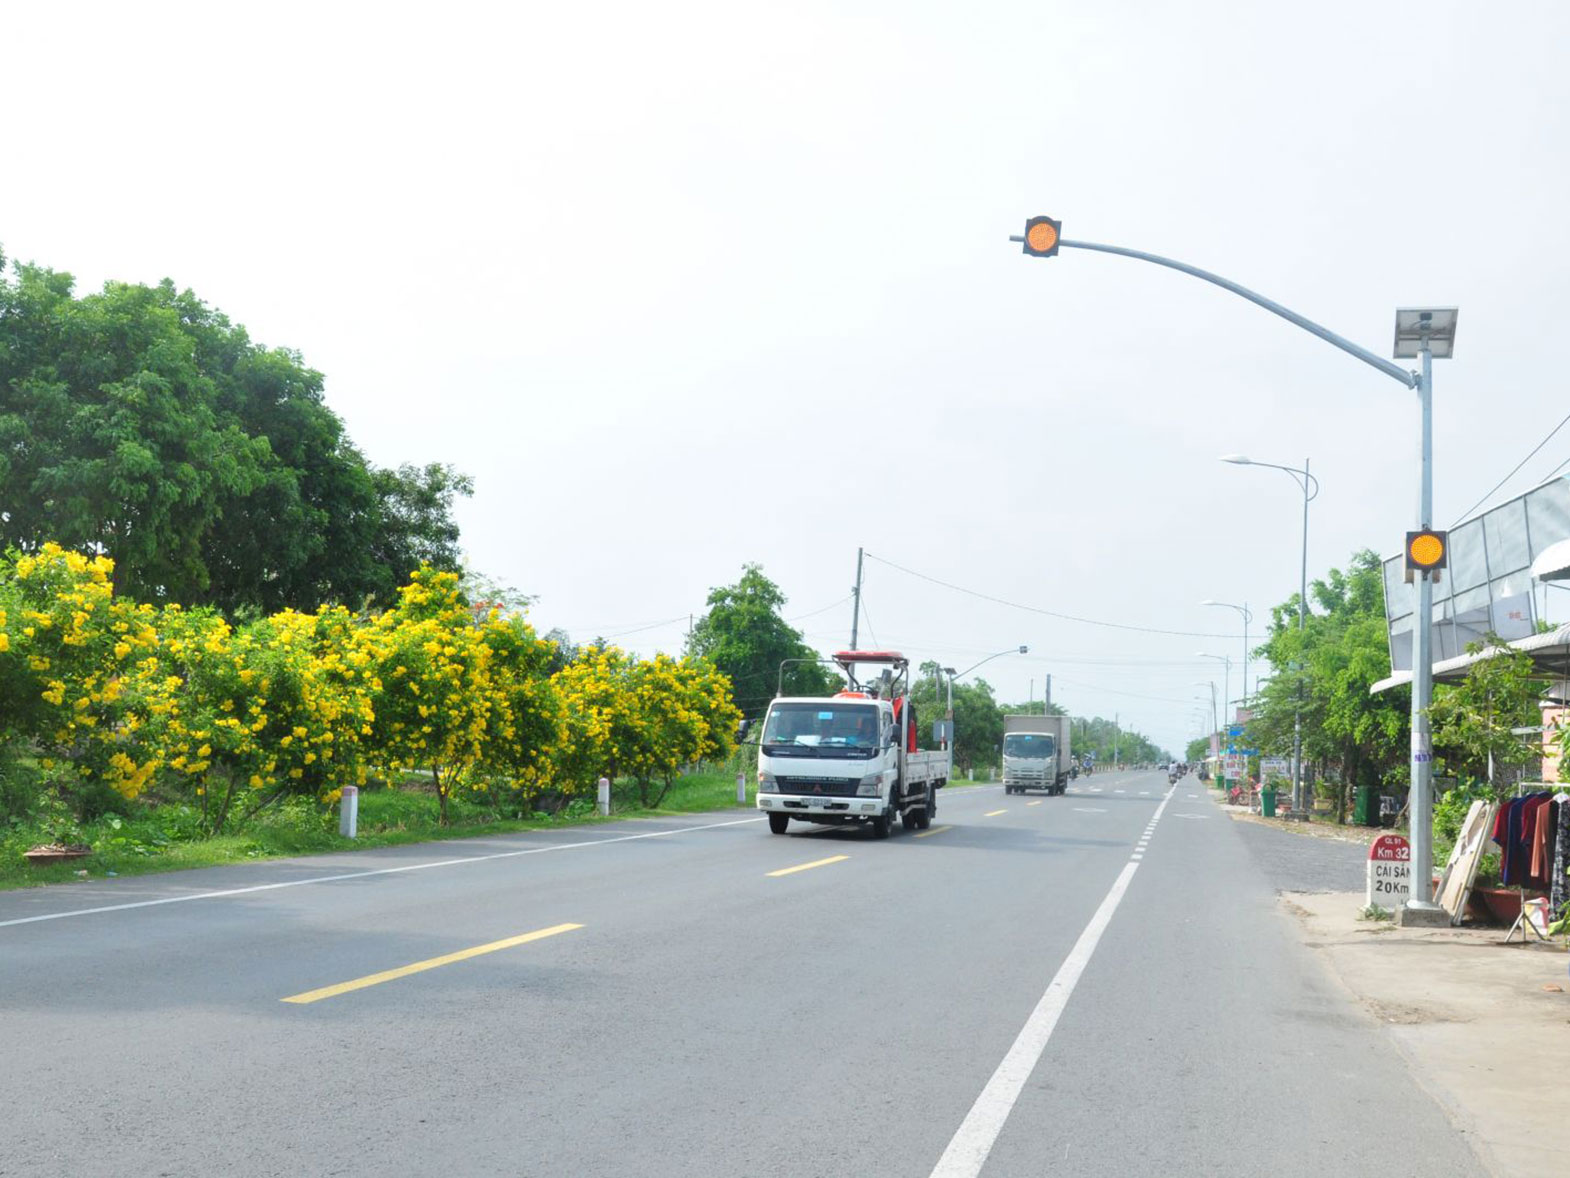 Việc phường Tân Hưng đề nghị lắp trụ đèn tín hiệu giao thông tại điểm giao giữa quốc lộ 91 với đường vào 3 trường học đã góp phần bảo đảm an toàn giao thông cho học sinh. Ảnh: ANH DŨNG